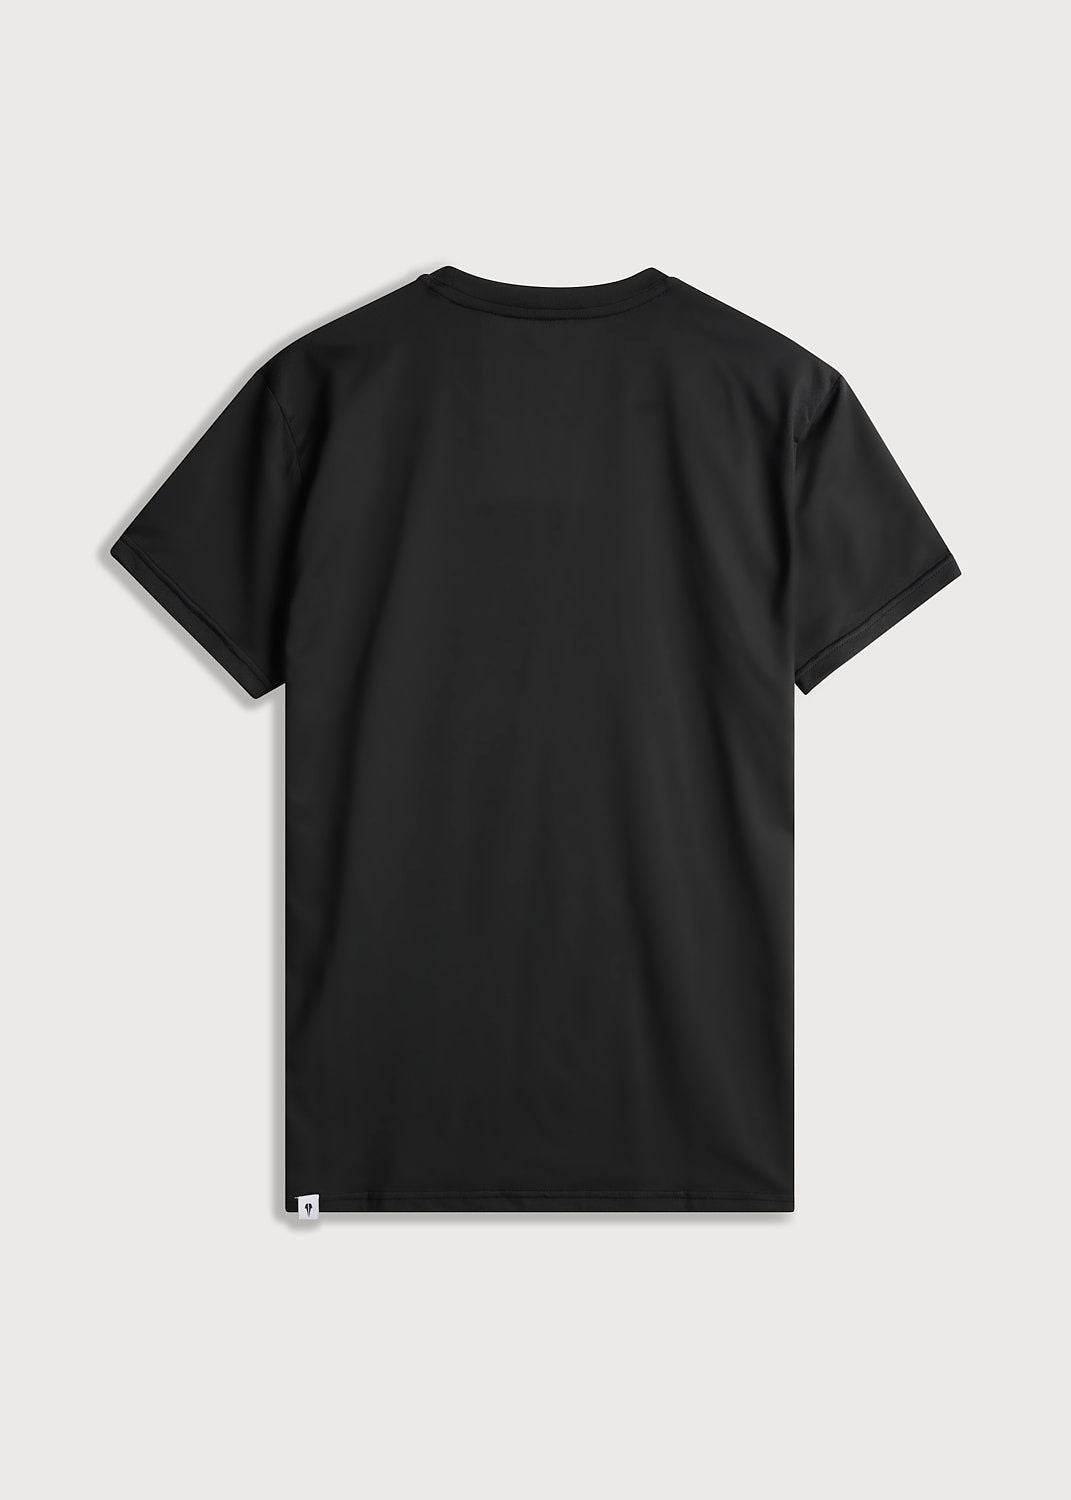 Active Hero Badminton T-Shirt